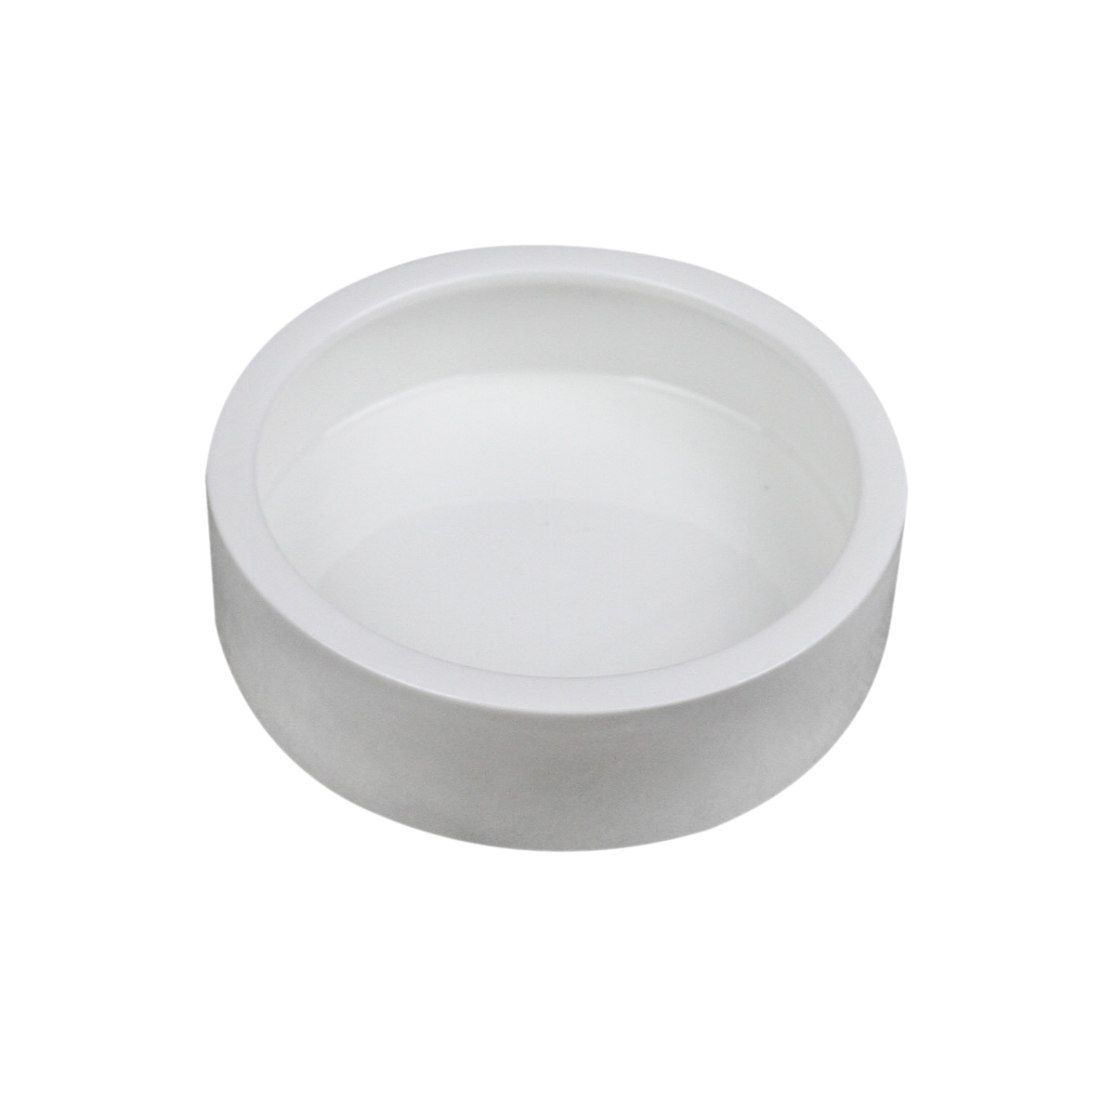 PETFORU 3 Size Ceramic Worm Anti-escape Dish Reptile Food Bowl for Small Animals Supply Accessories